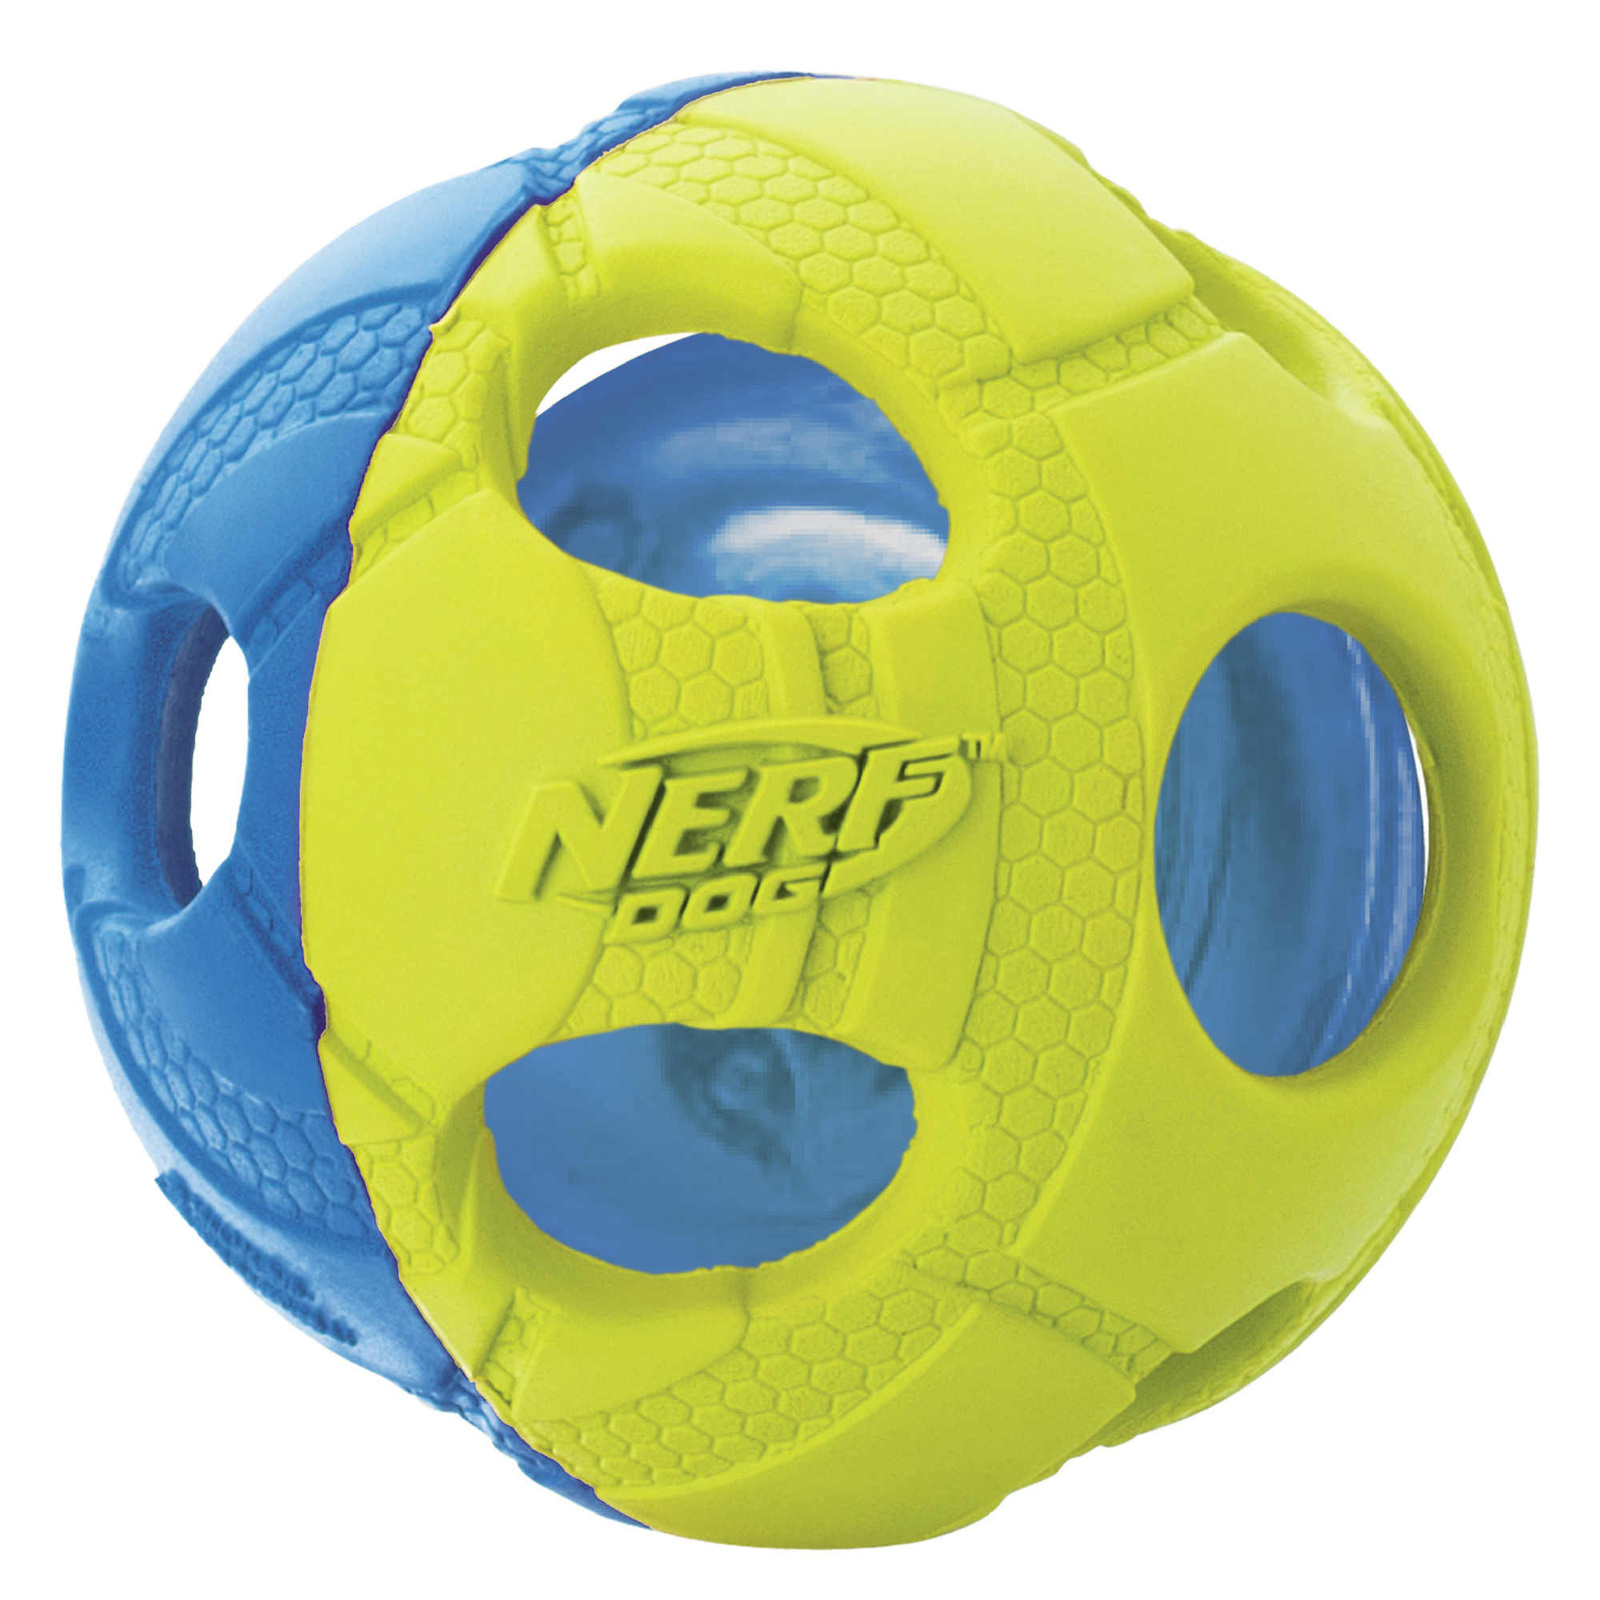 Nerf Nerf мяч светящийся, 6 см, (синий/зеленый) (104 г) nerf nerf светящийся мяч для регби 10 см 10 см